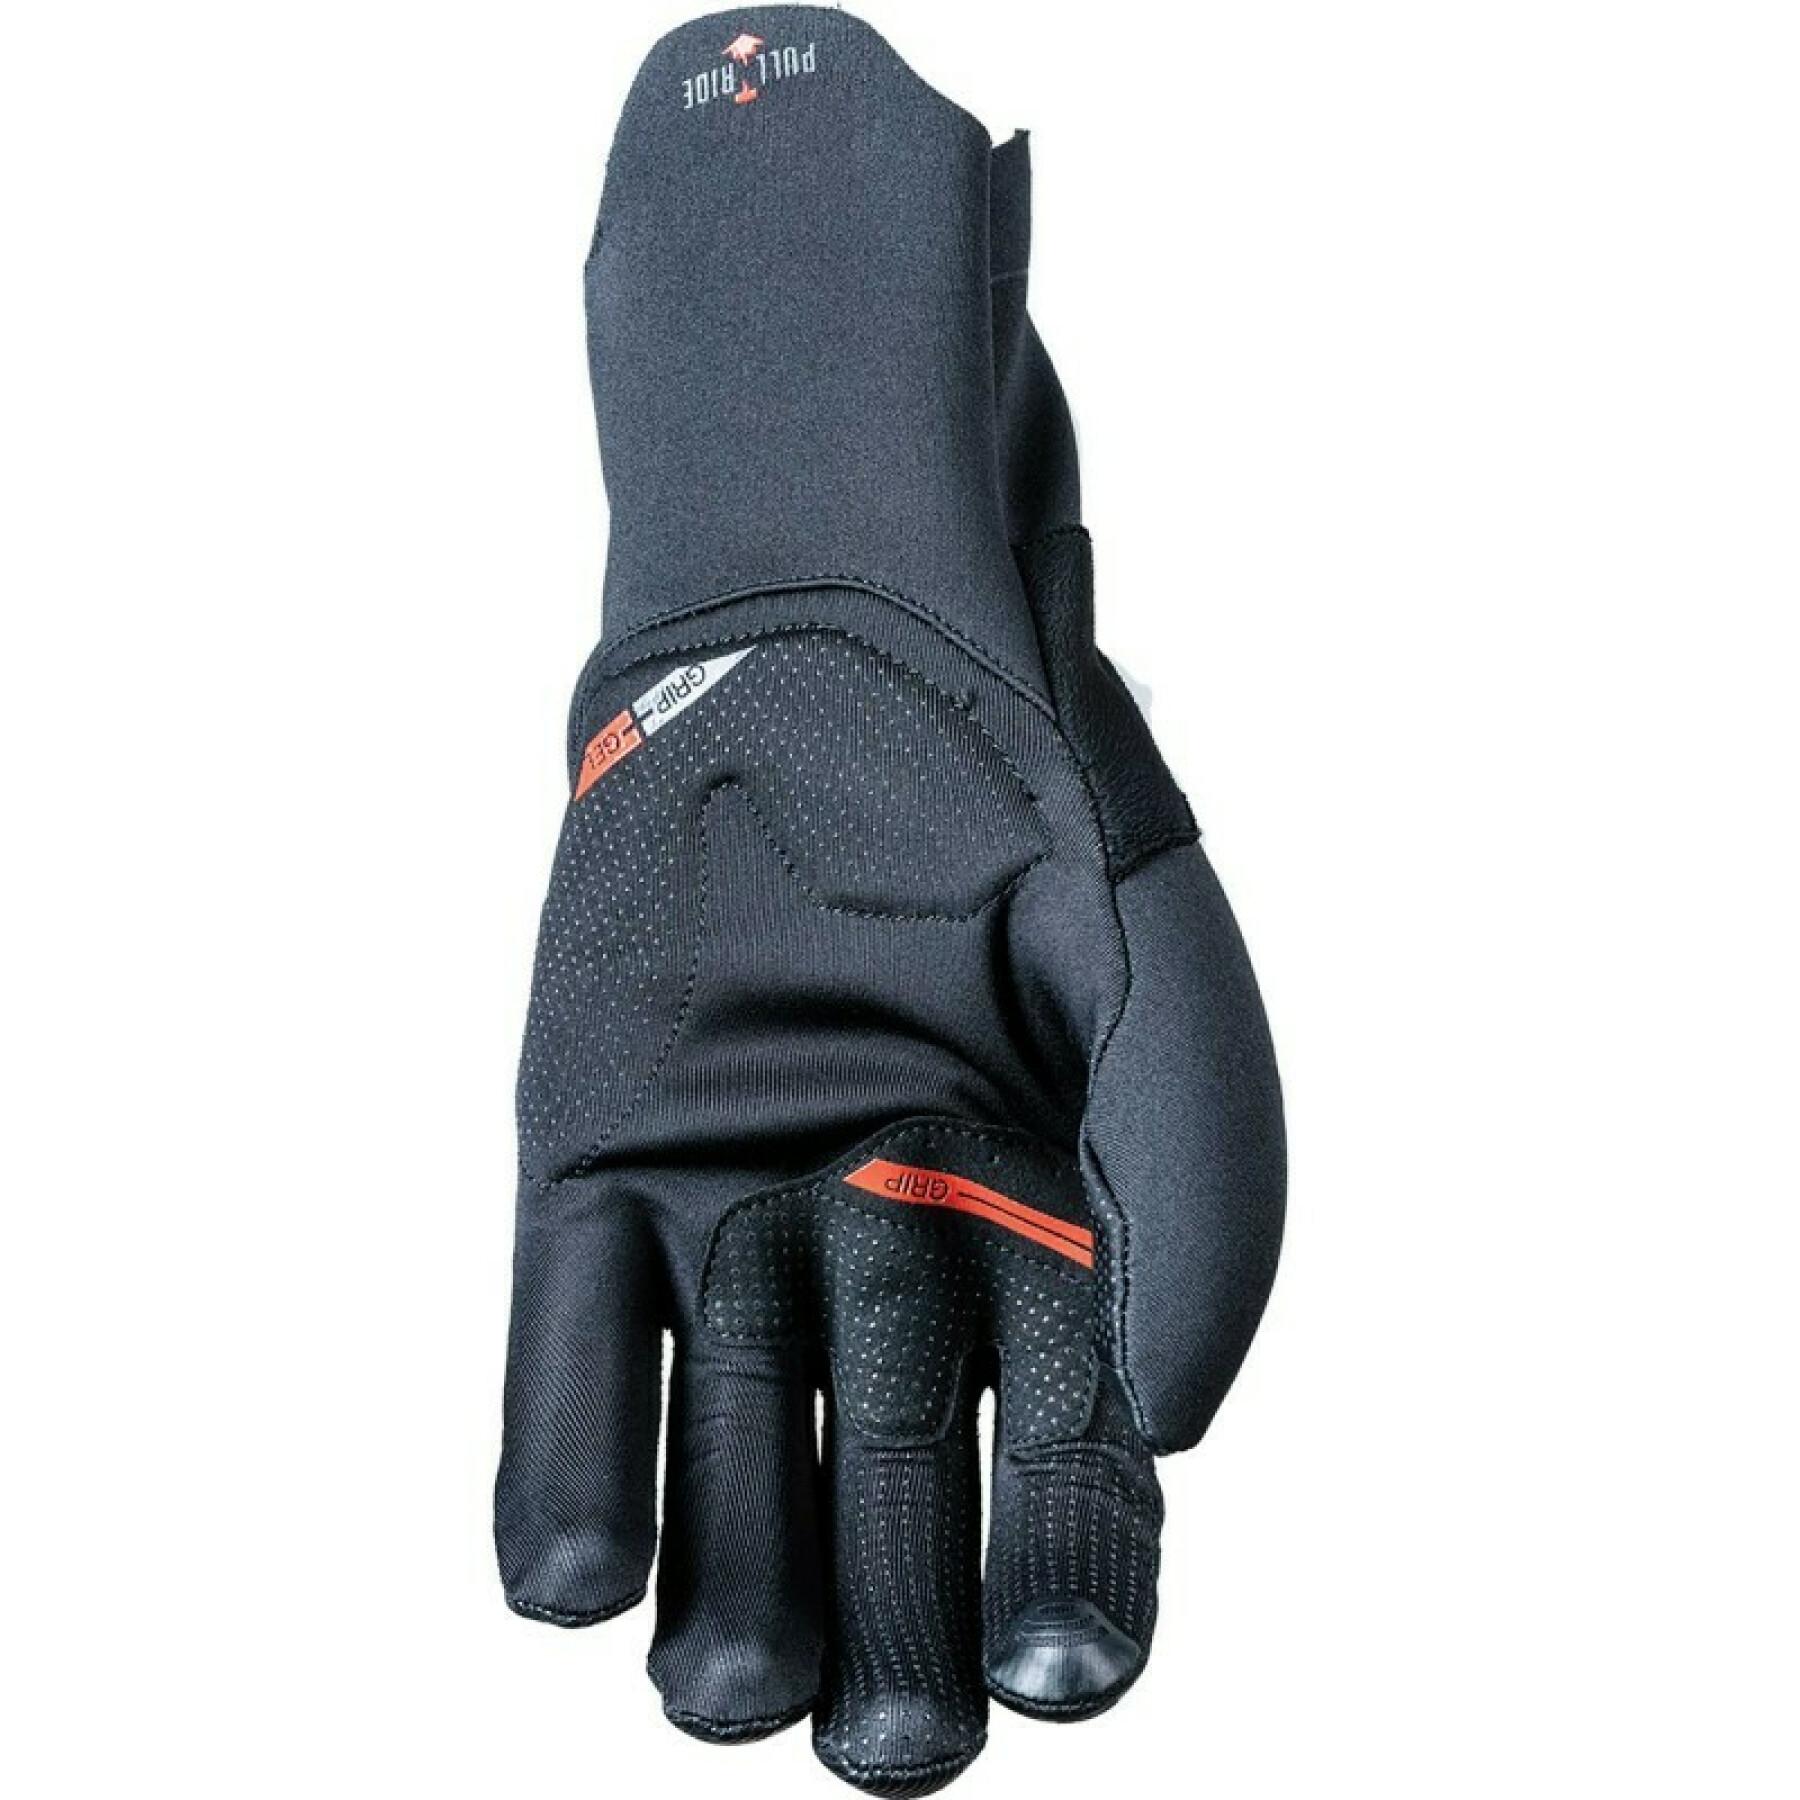 Gloves Five cyclone infinium stretch